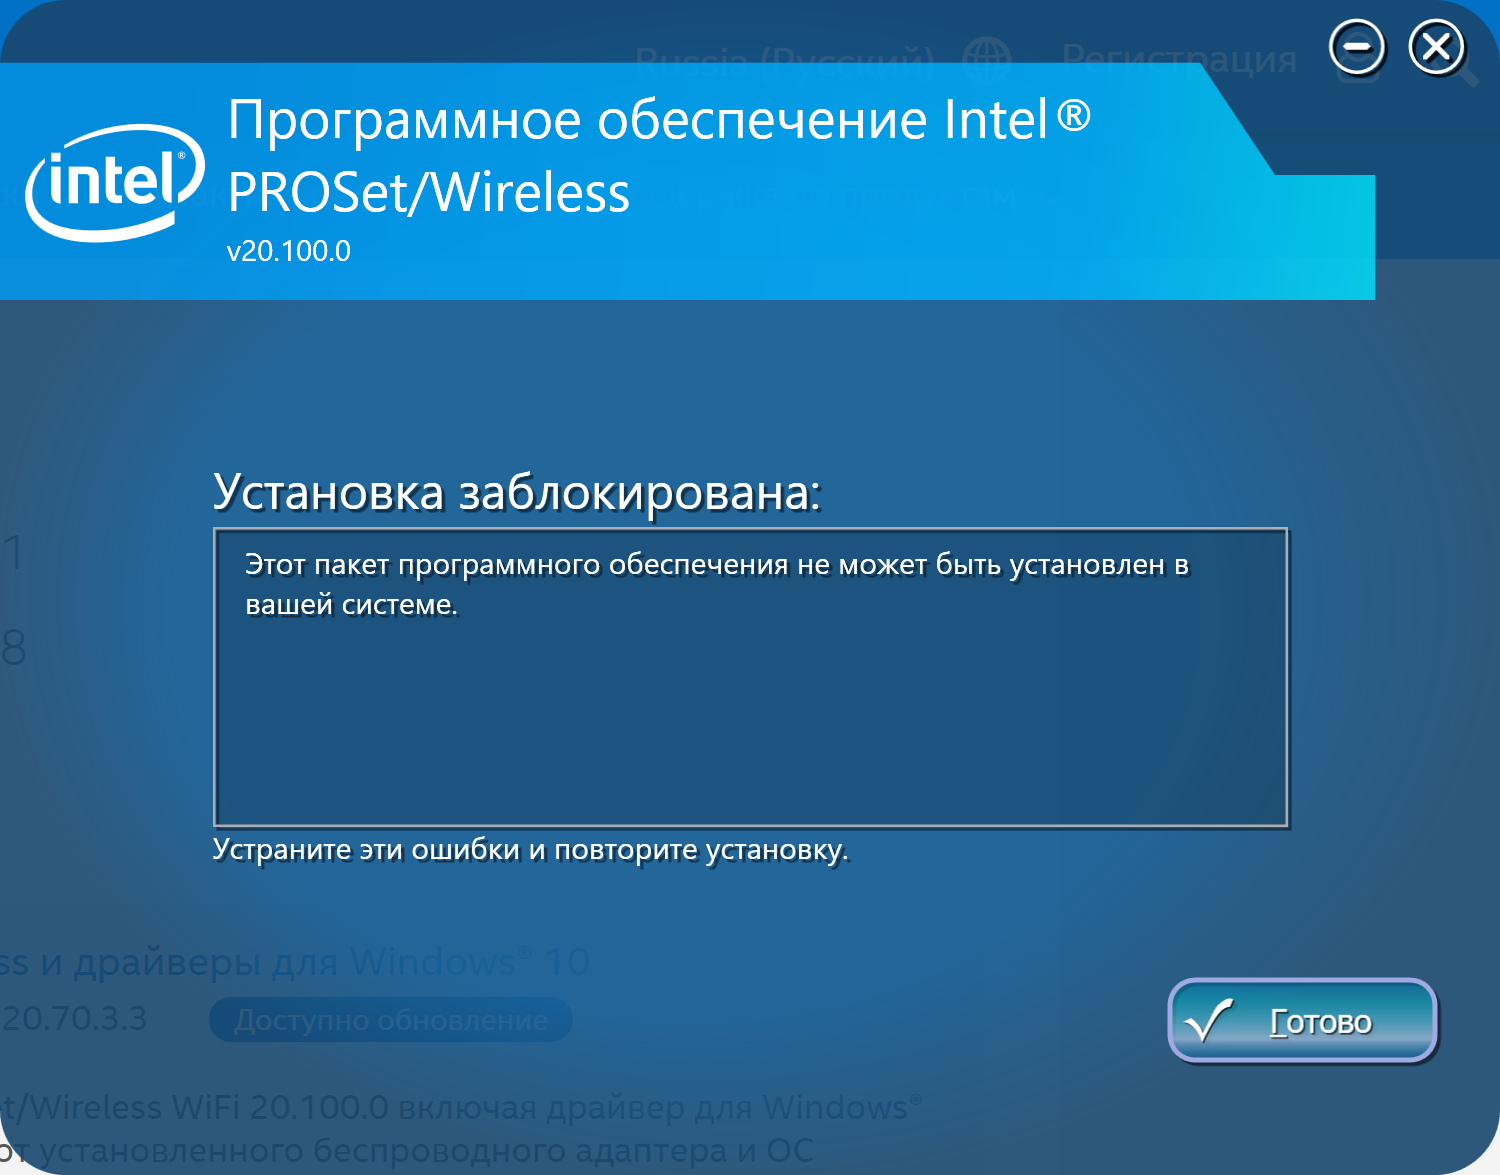 Intel PROSET Wireless. Драйвер был заблокирован. Блокировка в ин драйвер. Intel PROSET QFSP.